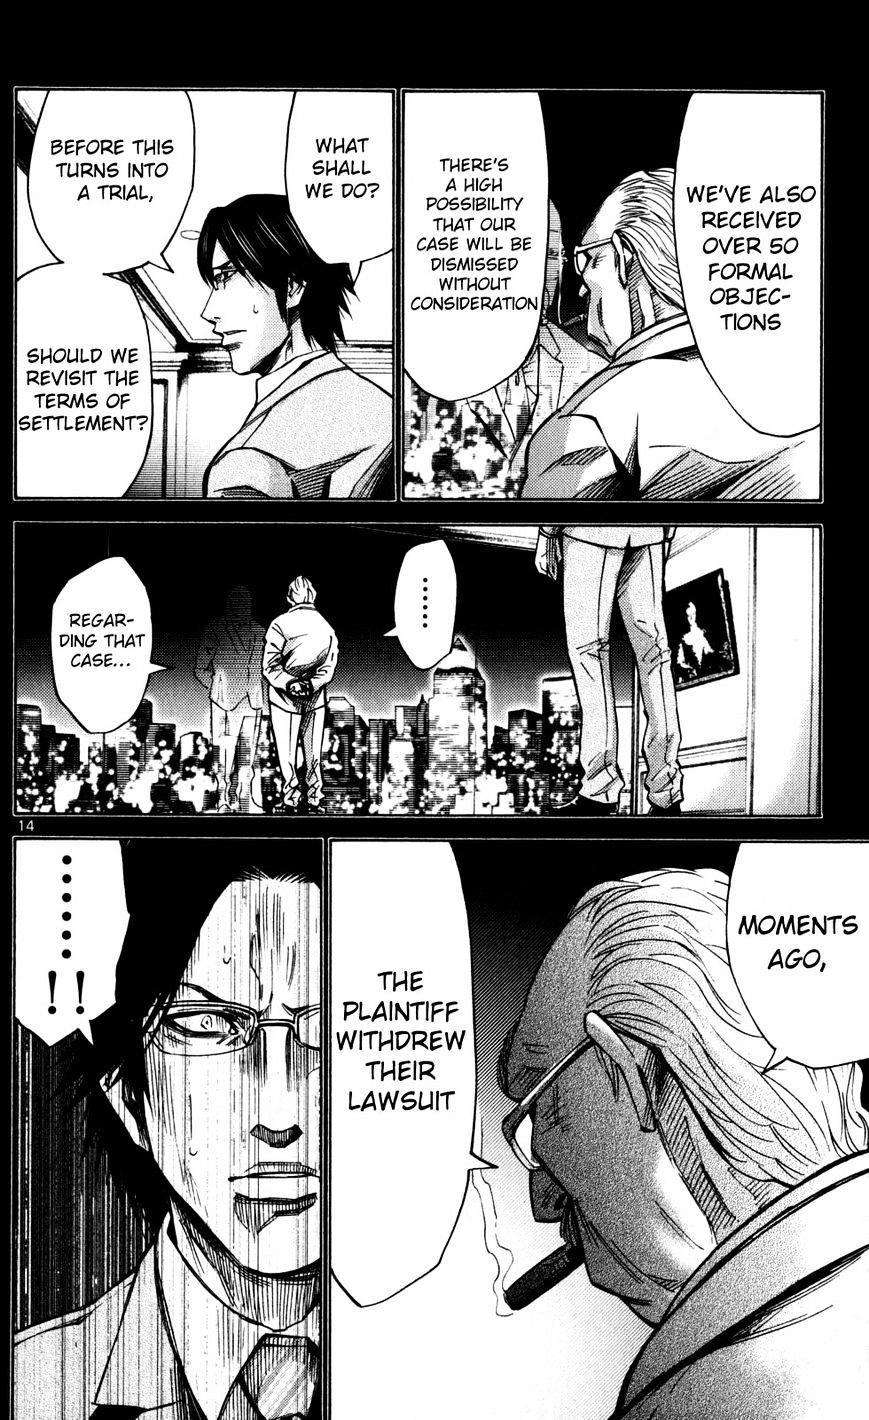 Imawa No Kuni No Alice Chapter 51.4 : Side Story 6 - King Of Diamonds (4) page 17 - Mangakakalot